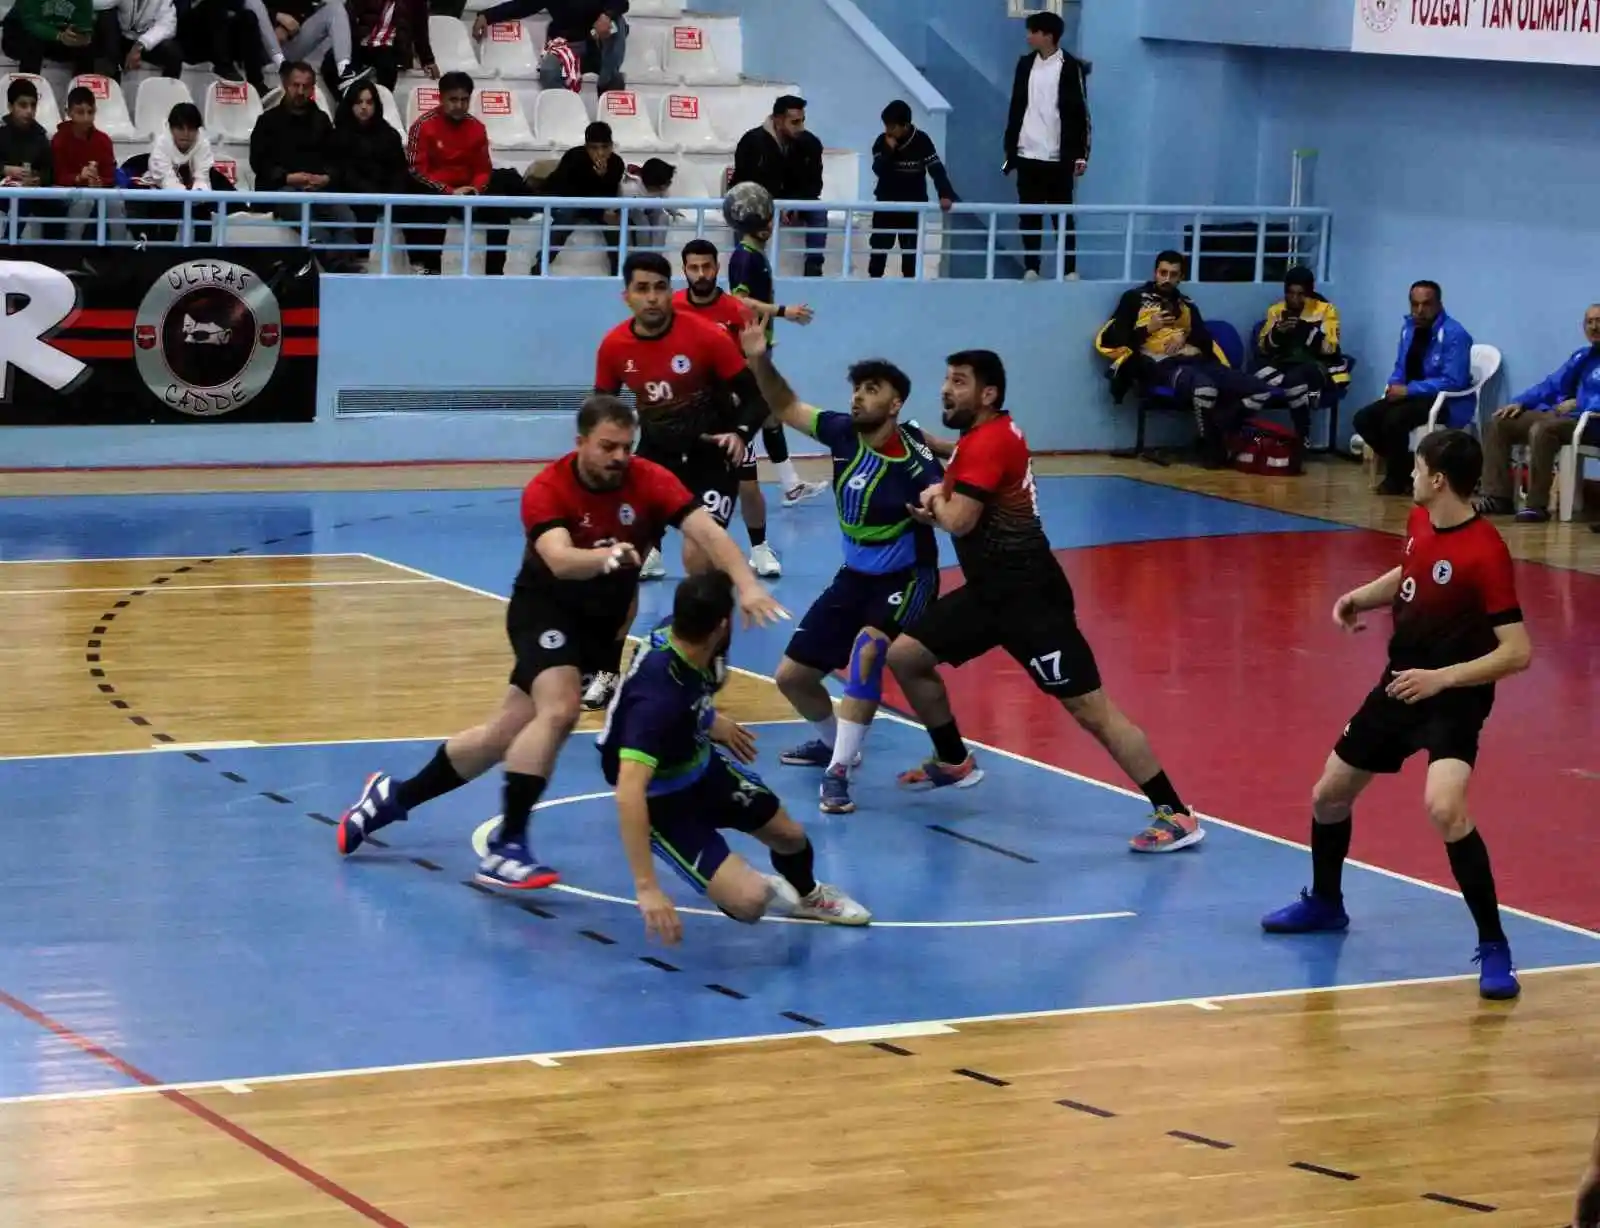 Yozgat Belediyesi Bozokspor ikinci yarıya galibiyetle başladı
